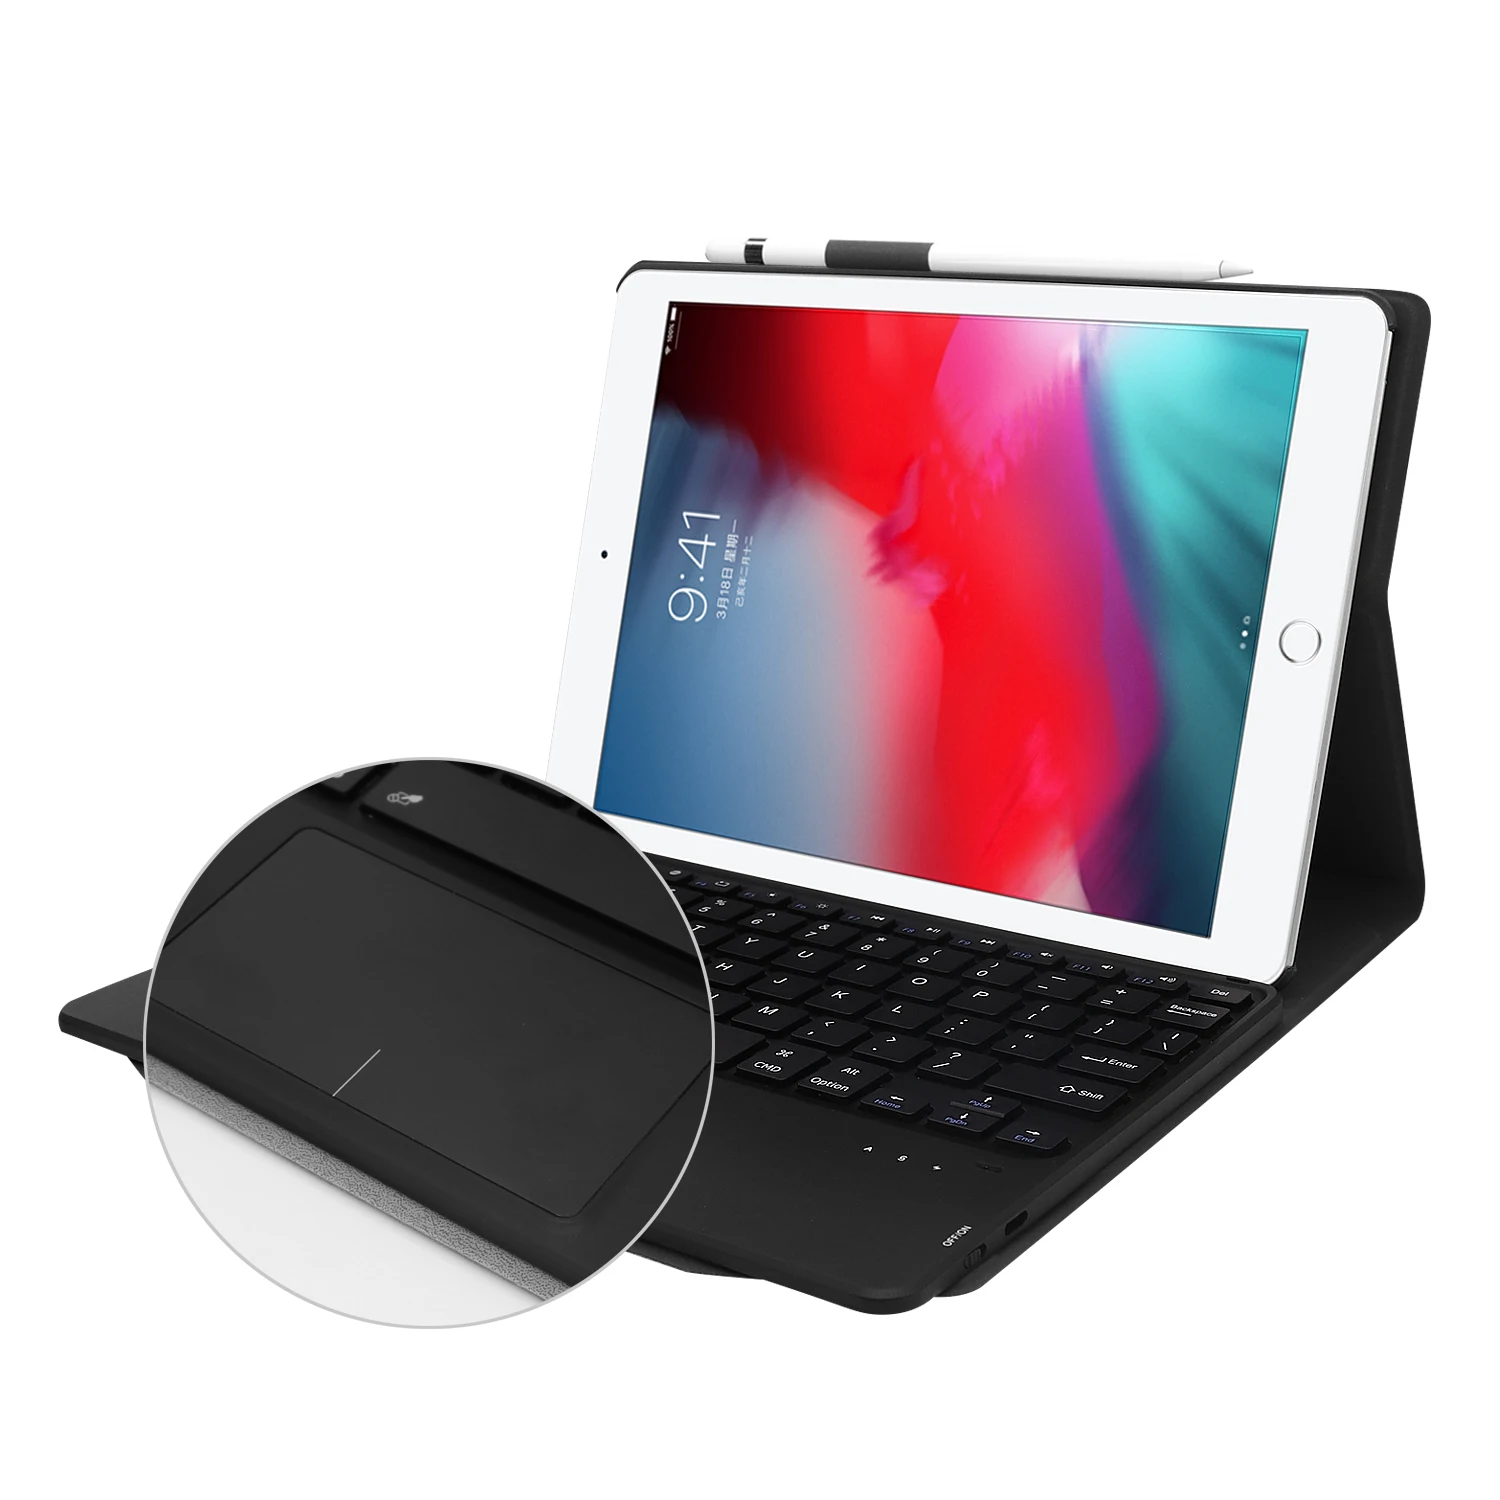 Чехол-клавиатура с сенсорной панелью для iPad 9,7 Air 3 10,5 Pro 11 mini 5 7,9 дюймов чехол-клавиатура для мыши для iPad 7th 10,2 клавиатура